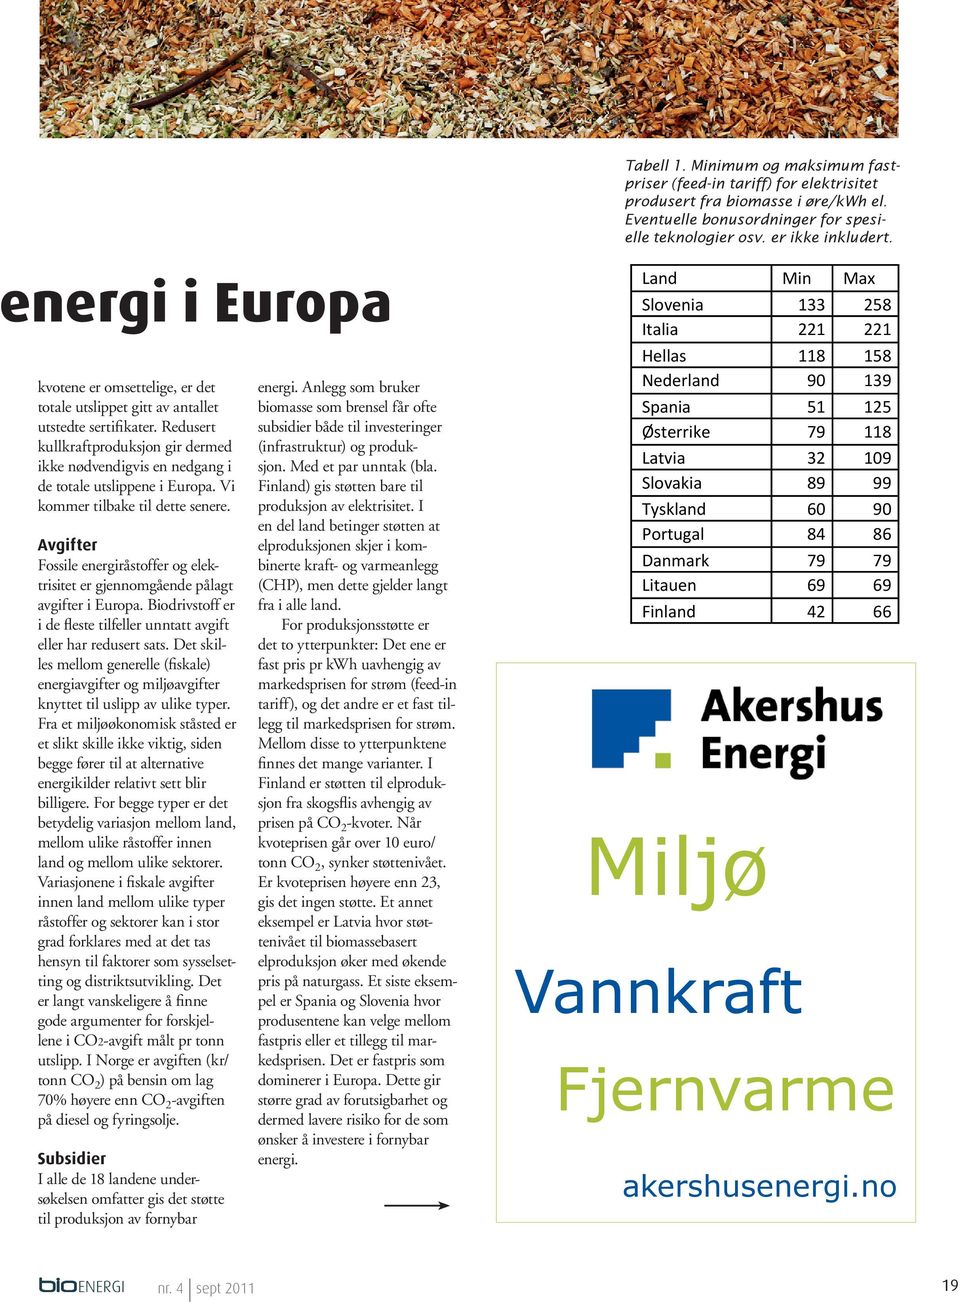 Redusert kullkraftproduksjon gir dermed ikke nødvendigvis en nedgang i de totale utslippene i Europa. Vi kommer tilbake til dette senere.